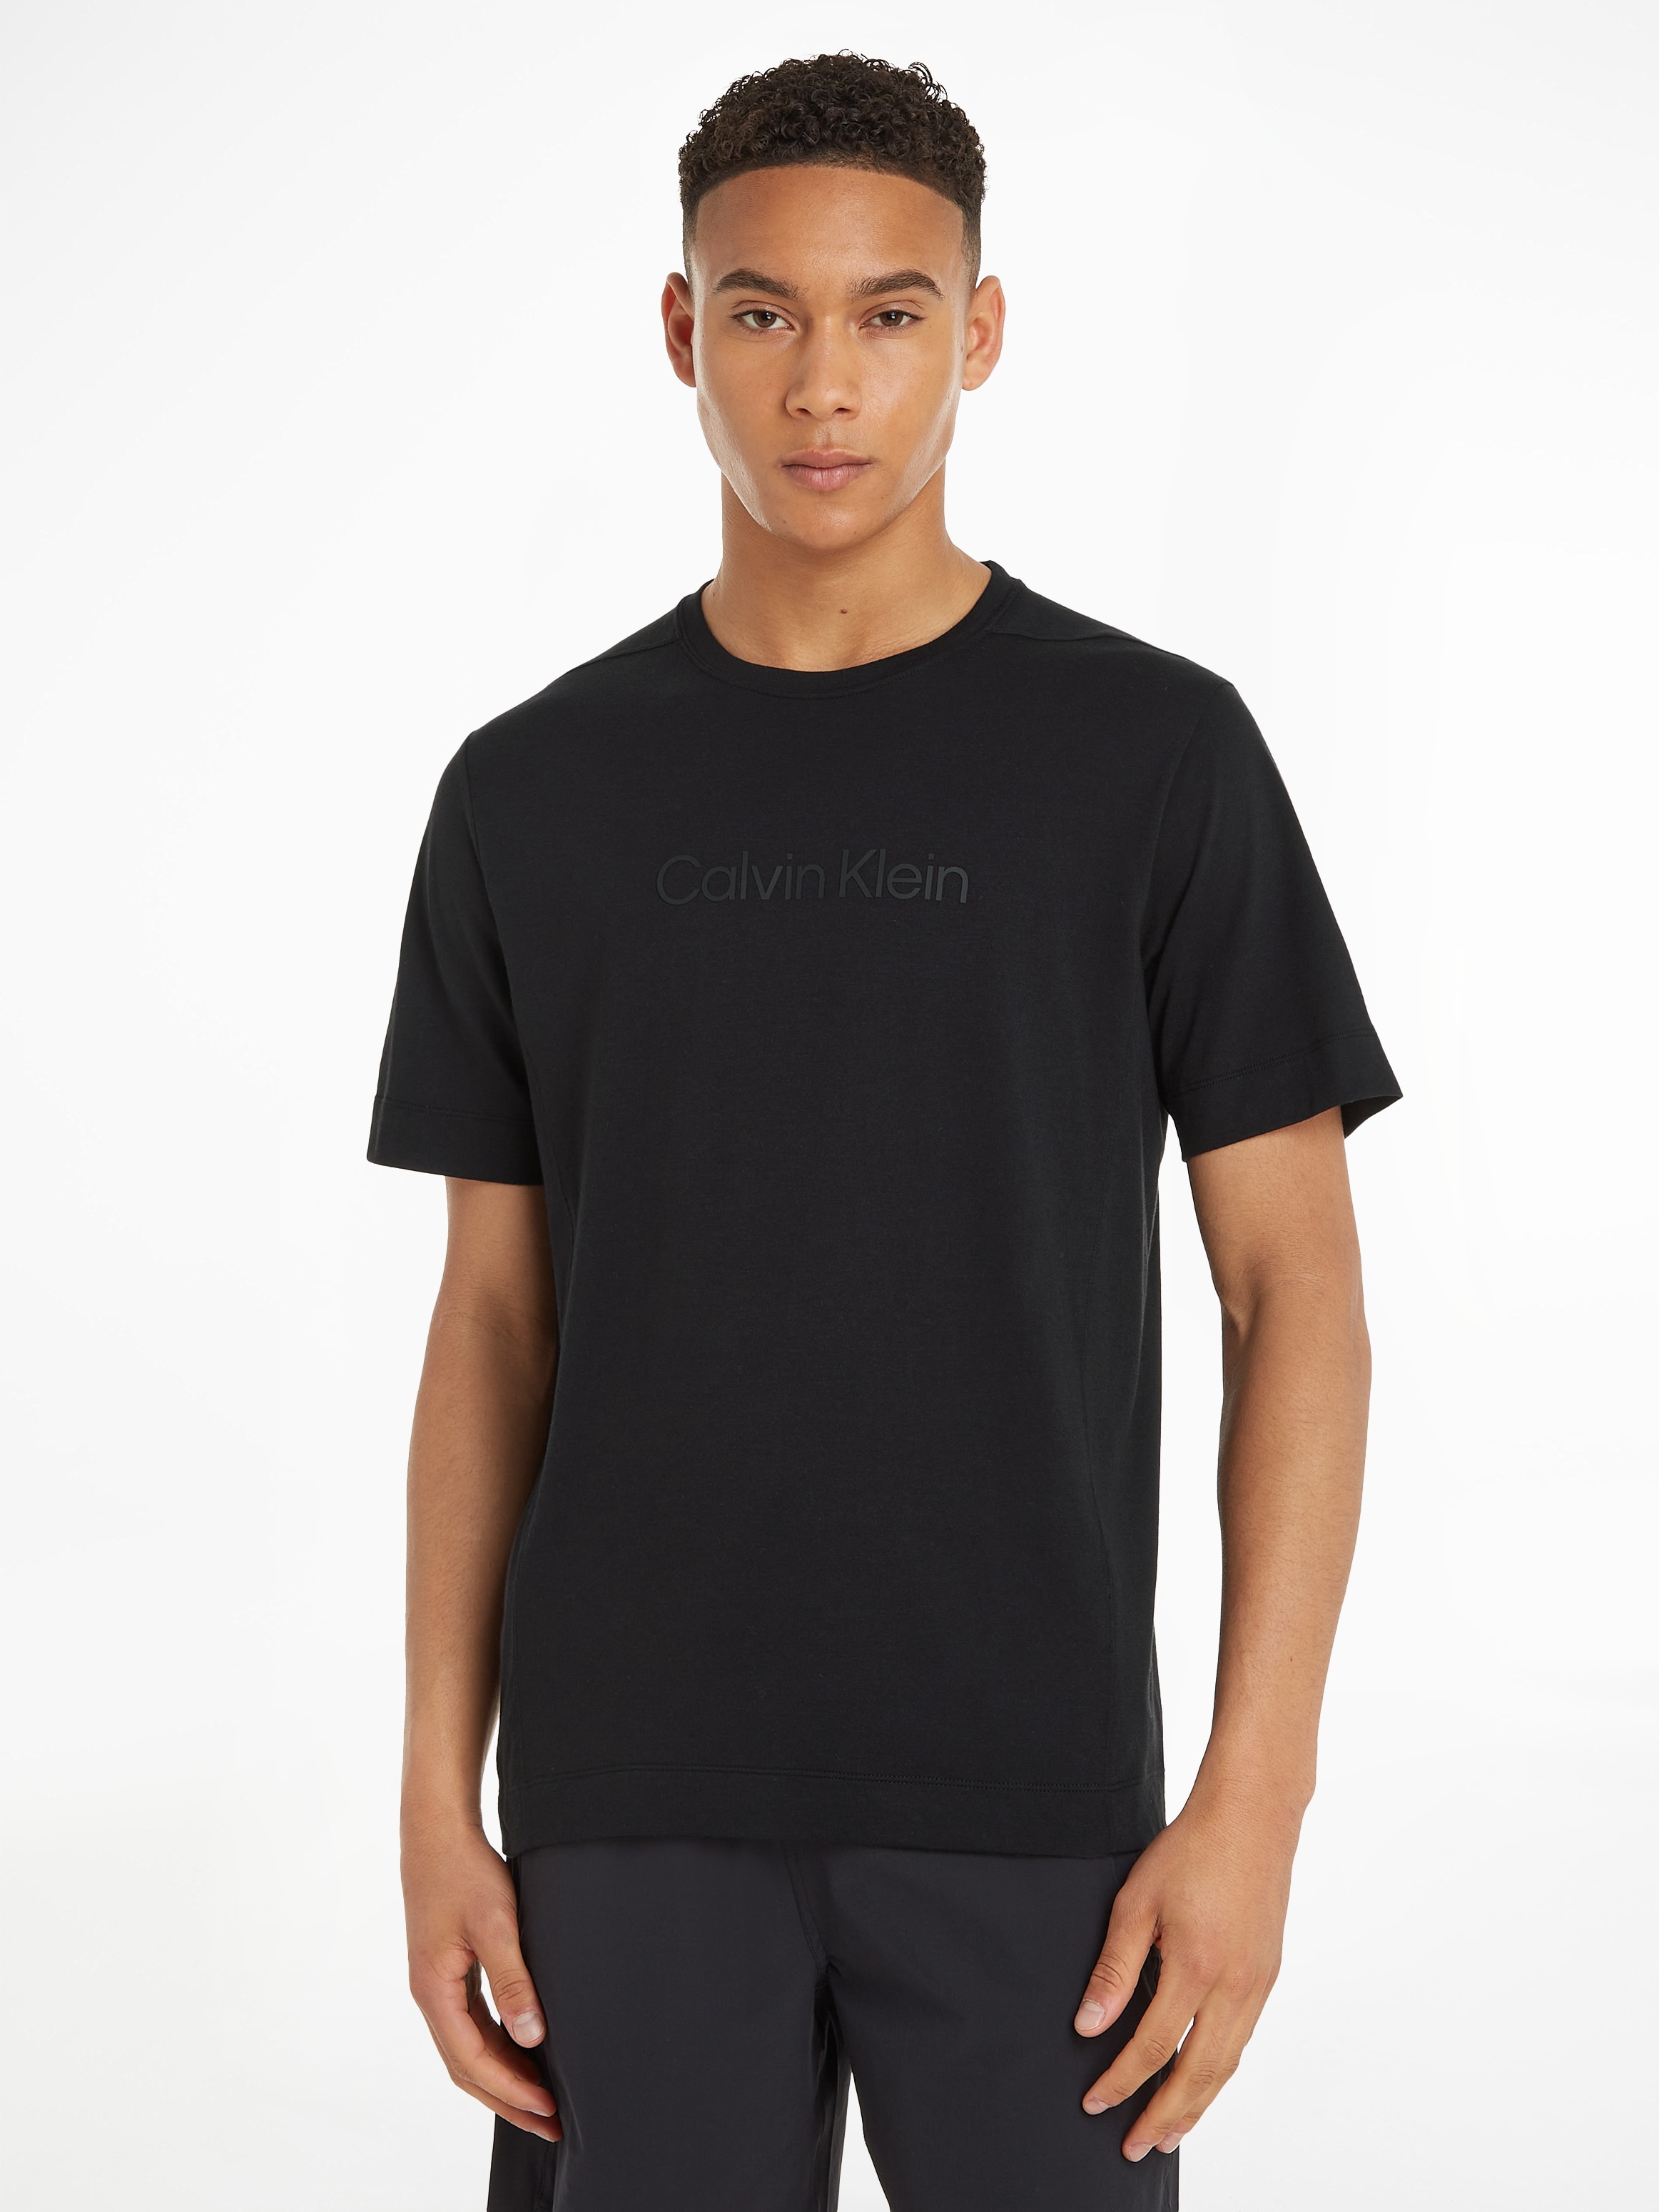 Sport - PW Calvin TEE« online SS OTTO bei shoppen »Shirts Klein T-Shirt